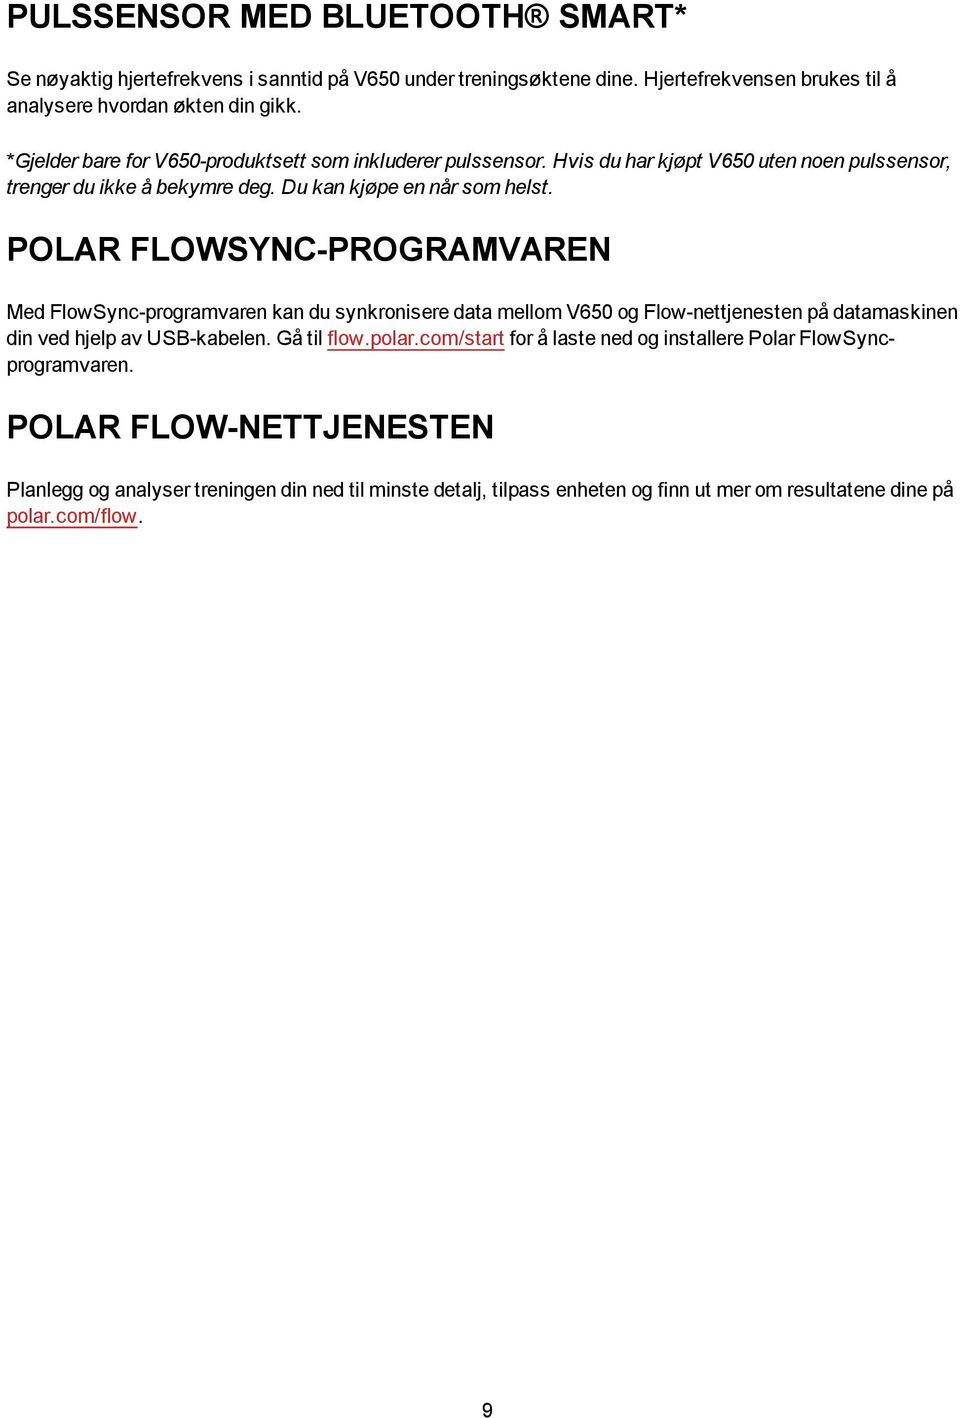 POLAR FLOWSYNC-PROGRAMVAREN Med FlowSync-programvaren kan du synkronisere data mellom V650 og Flow-nettjenesten på datamaskinen din ved hjelp av USB-kabelen. Gå til flow.polar.